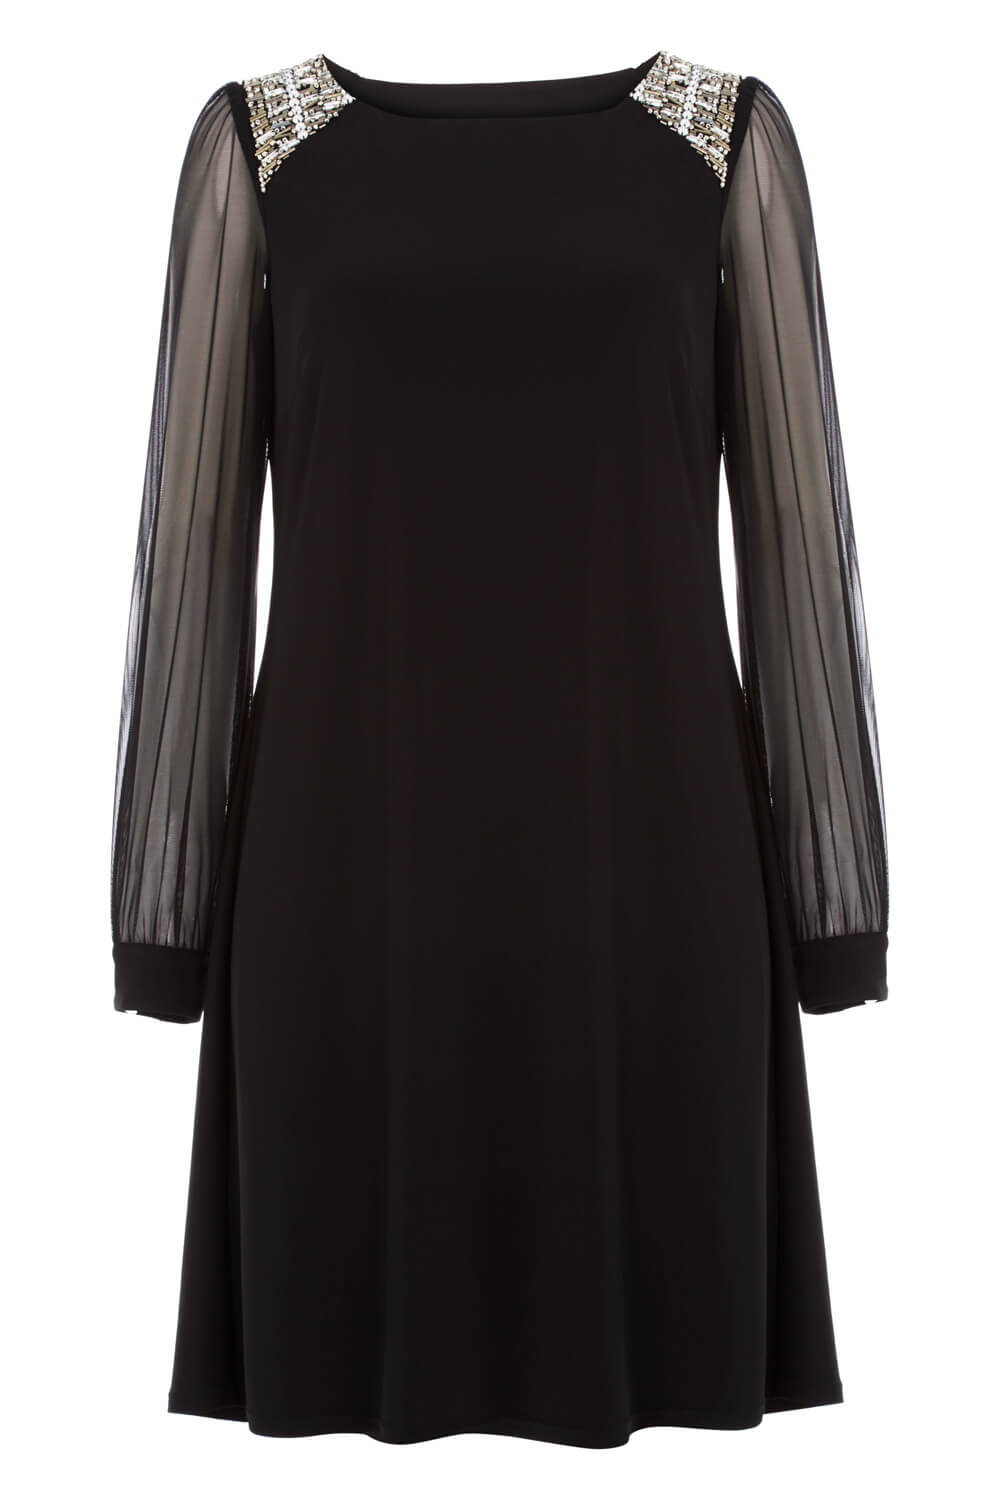 Black Embellished Shoulder Shift Dress, Image 5 of 5